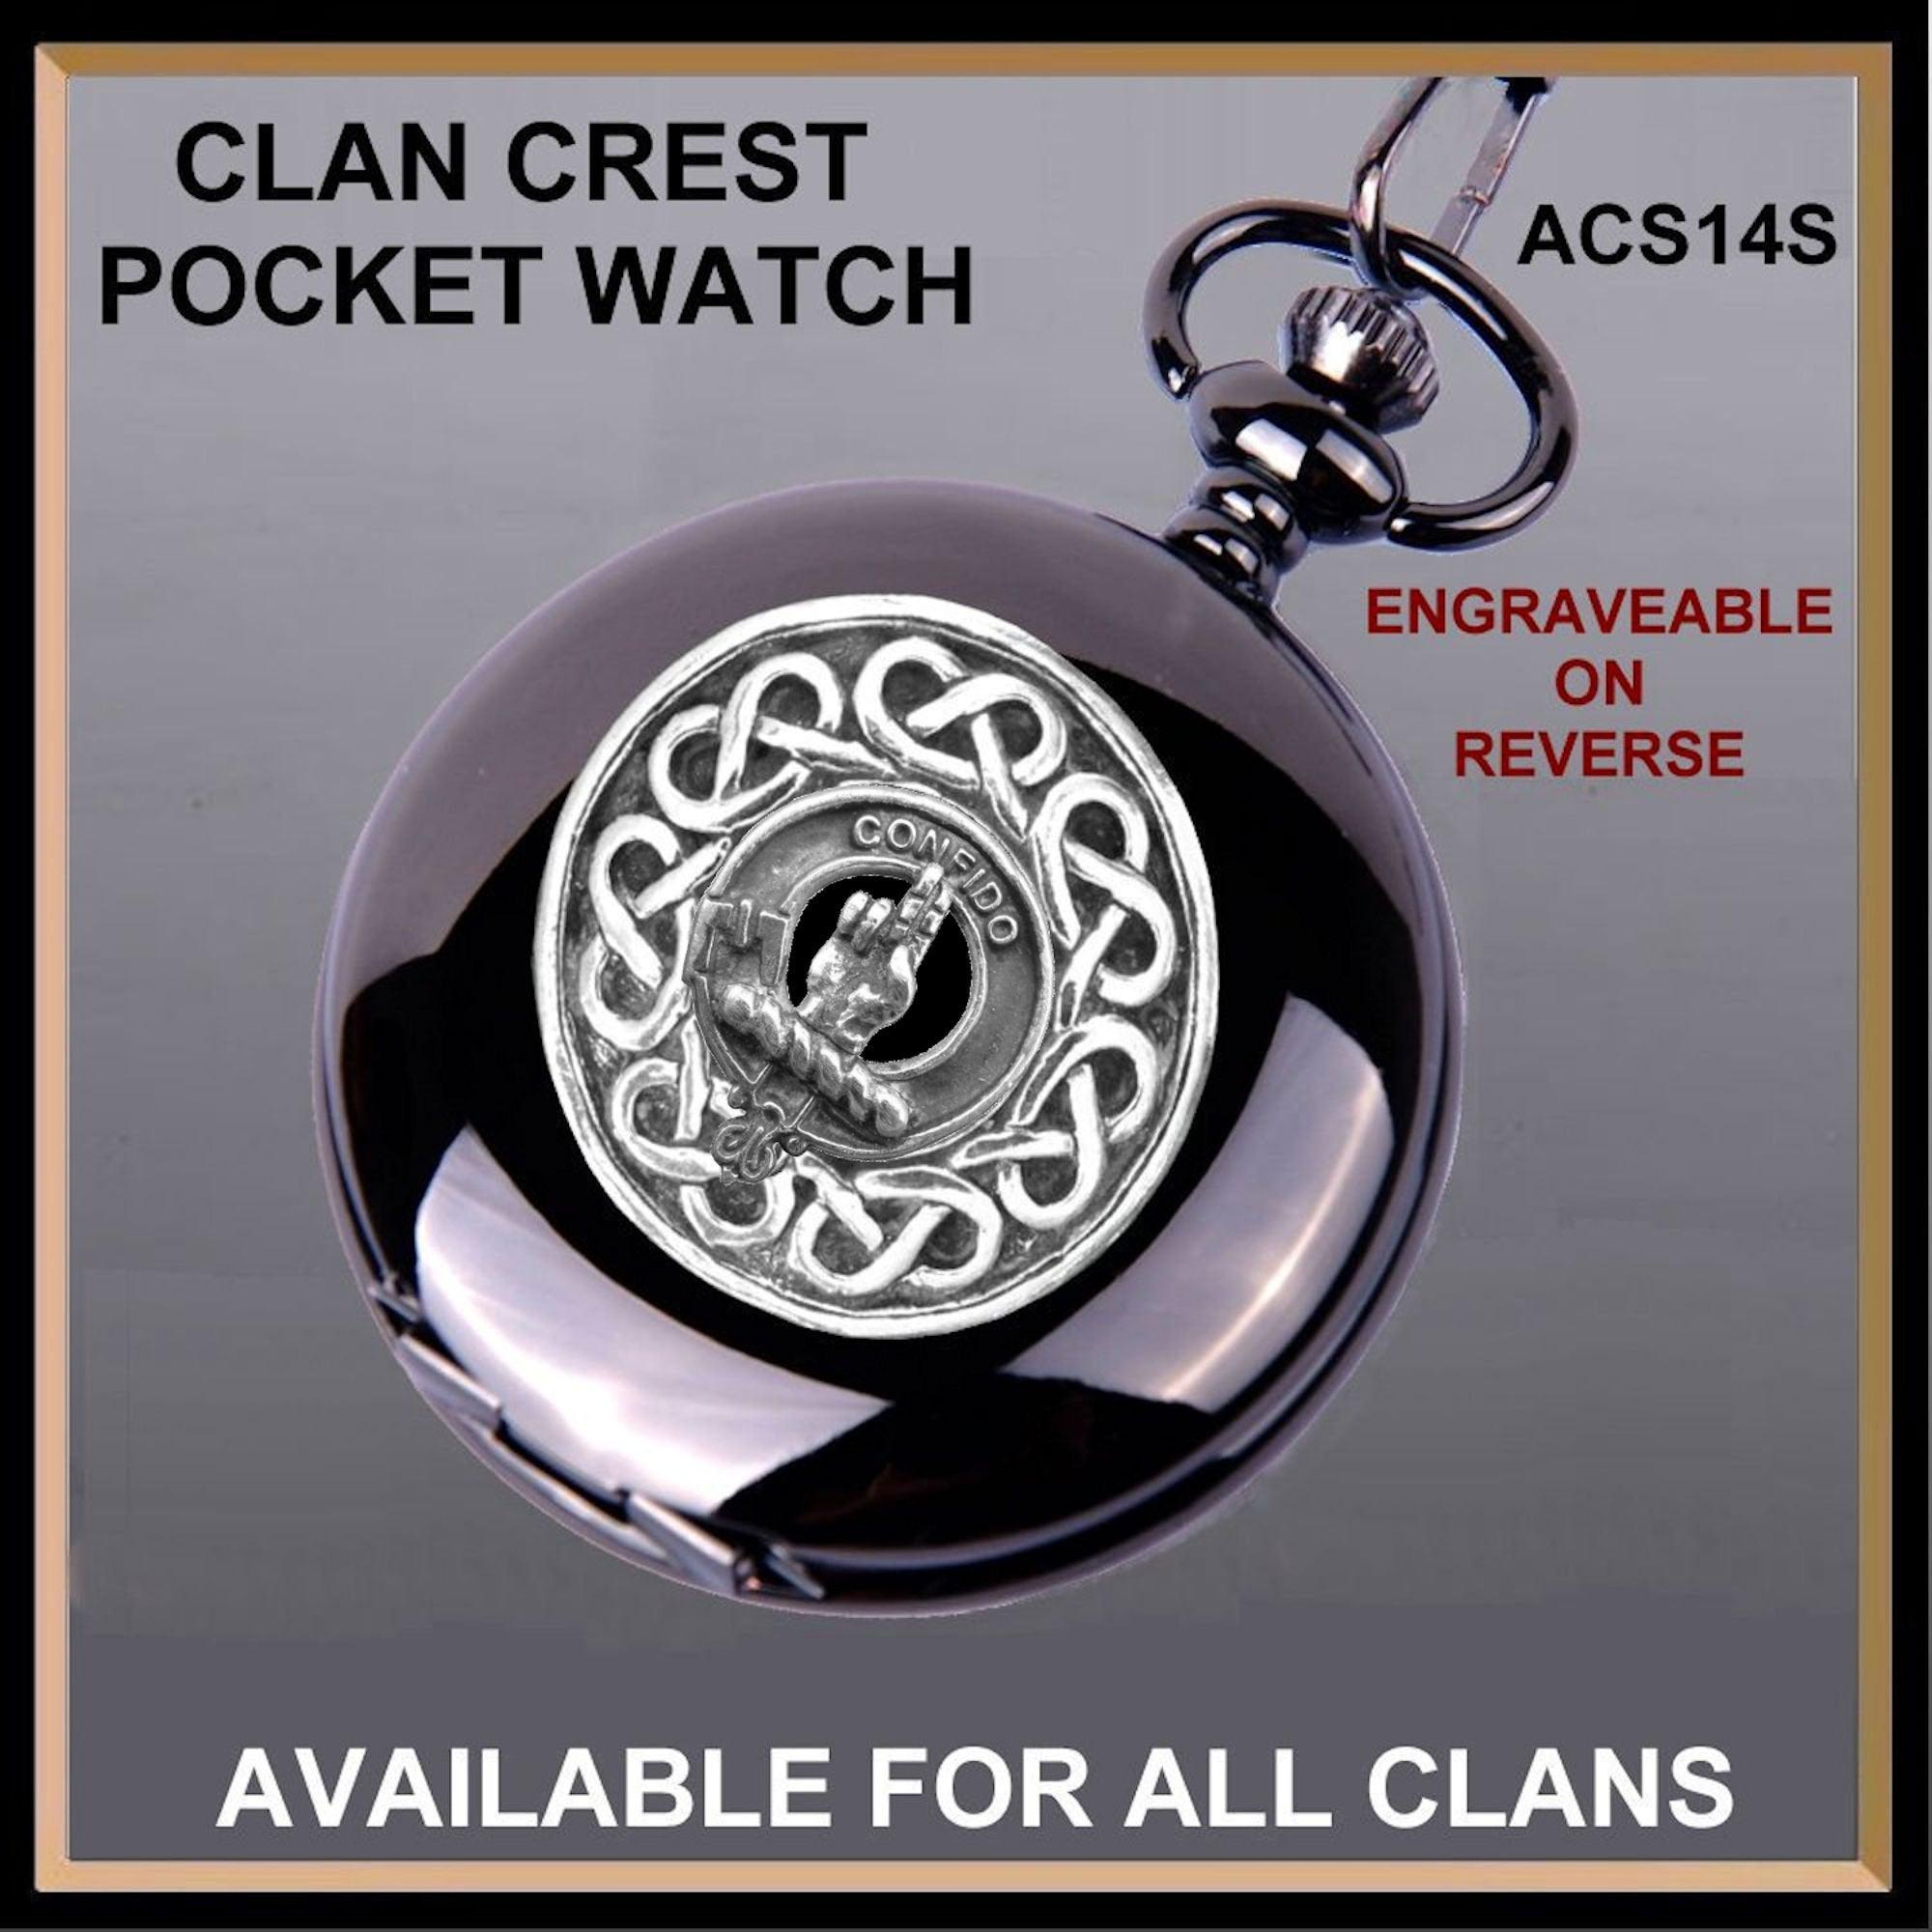 Boyd Scottish Clan Crest Pocket Watch